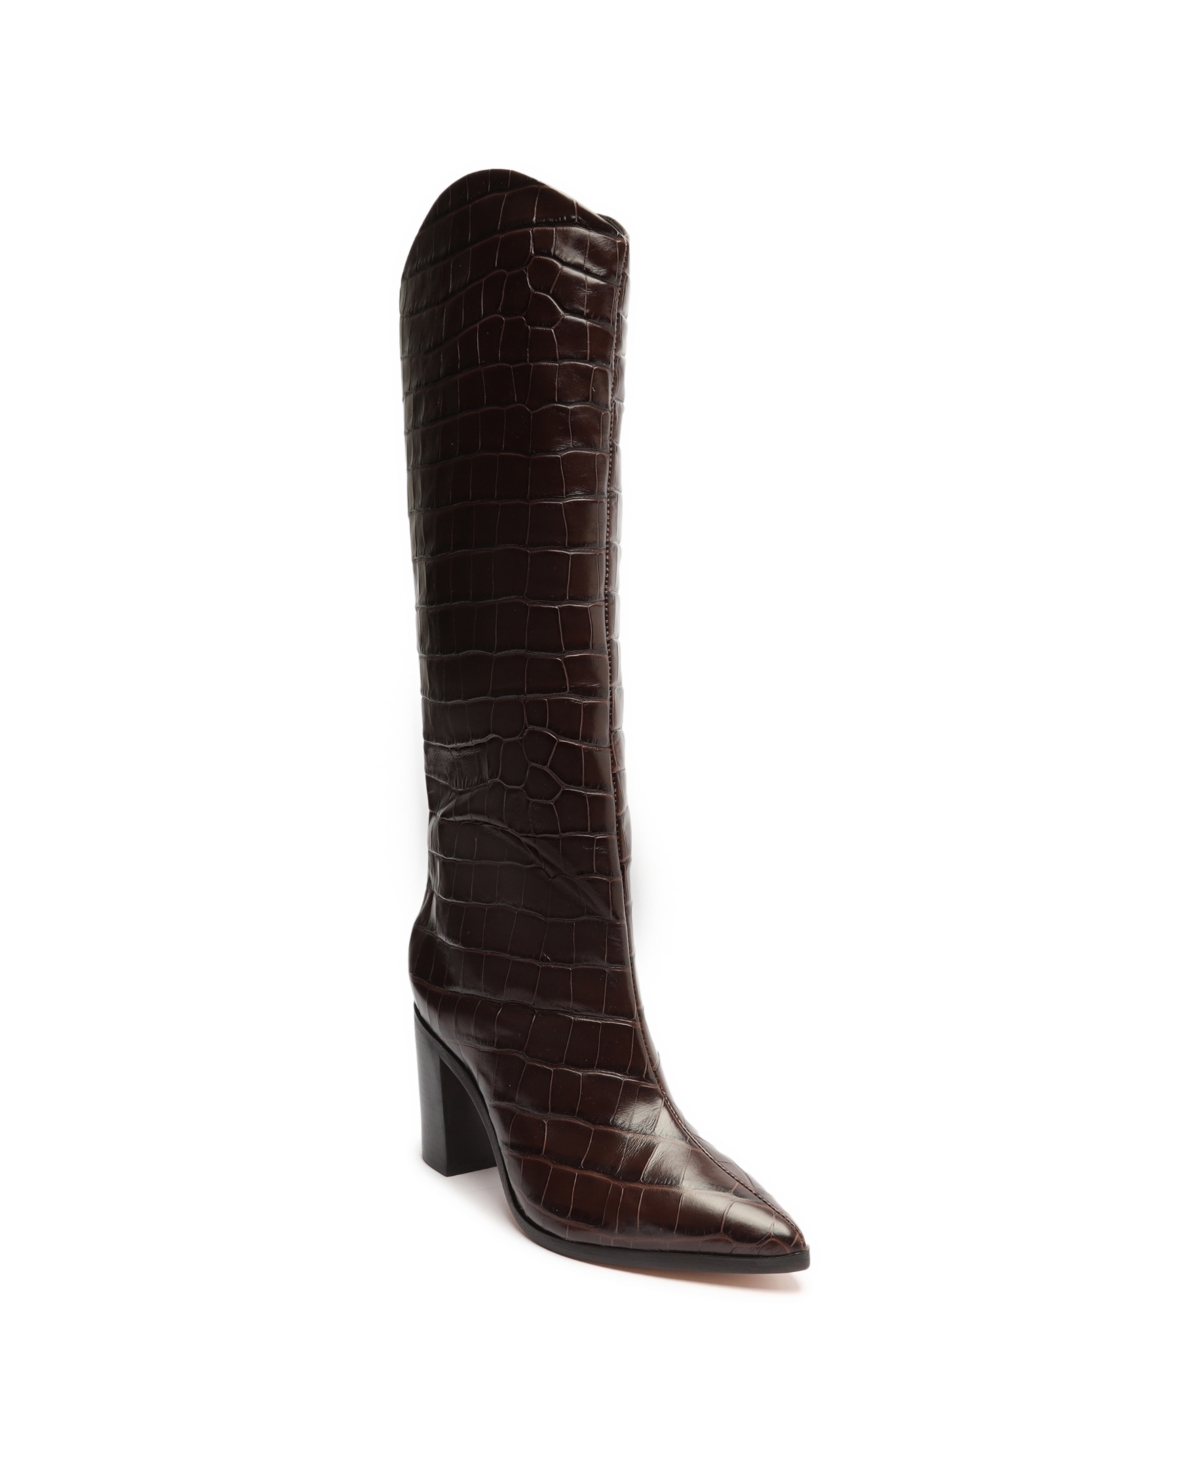 Women's Maryana High Block Heel Boots - Brown - Leather